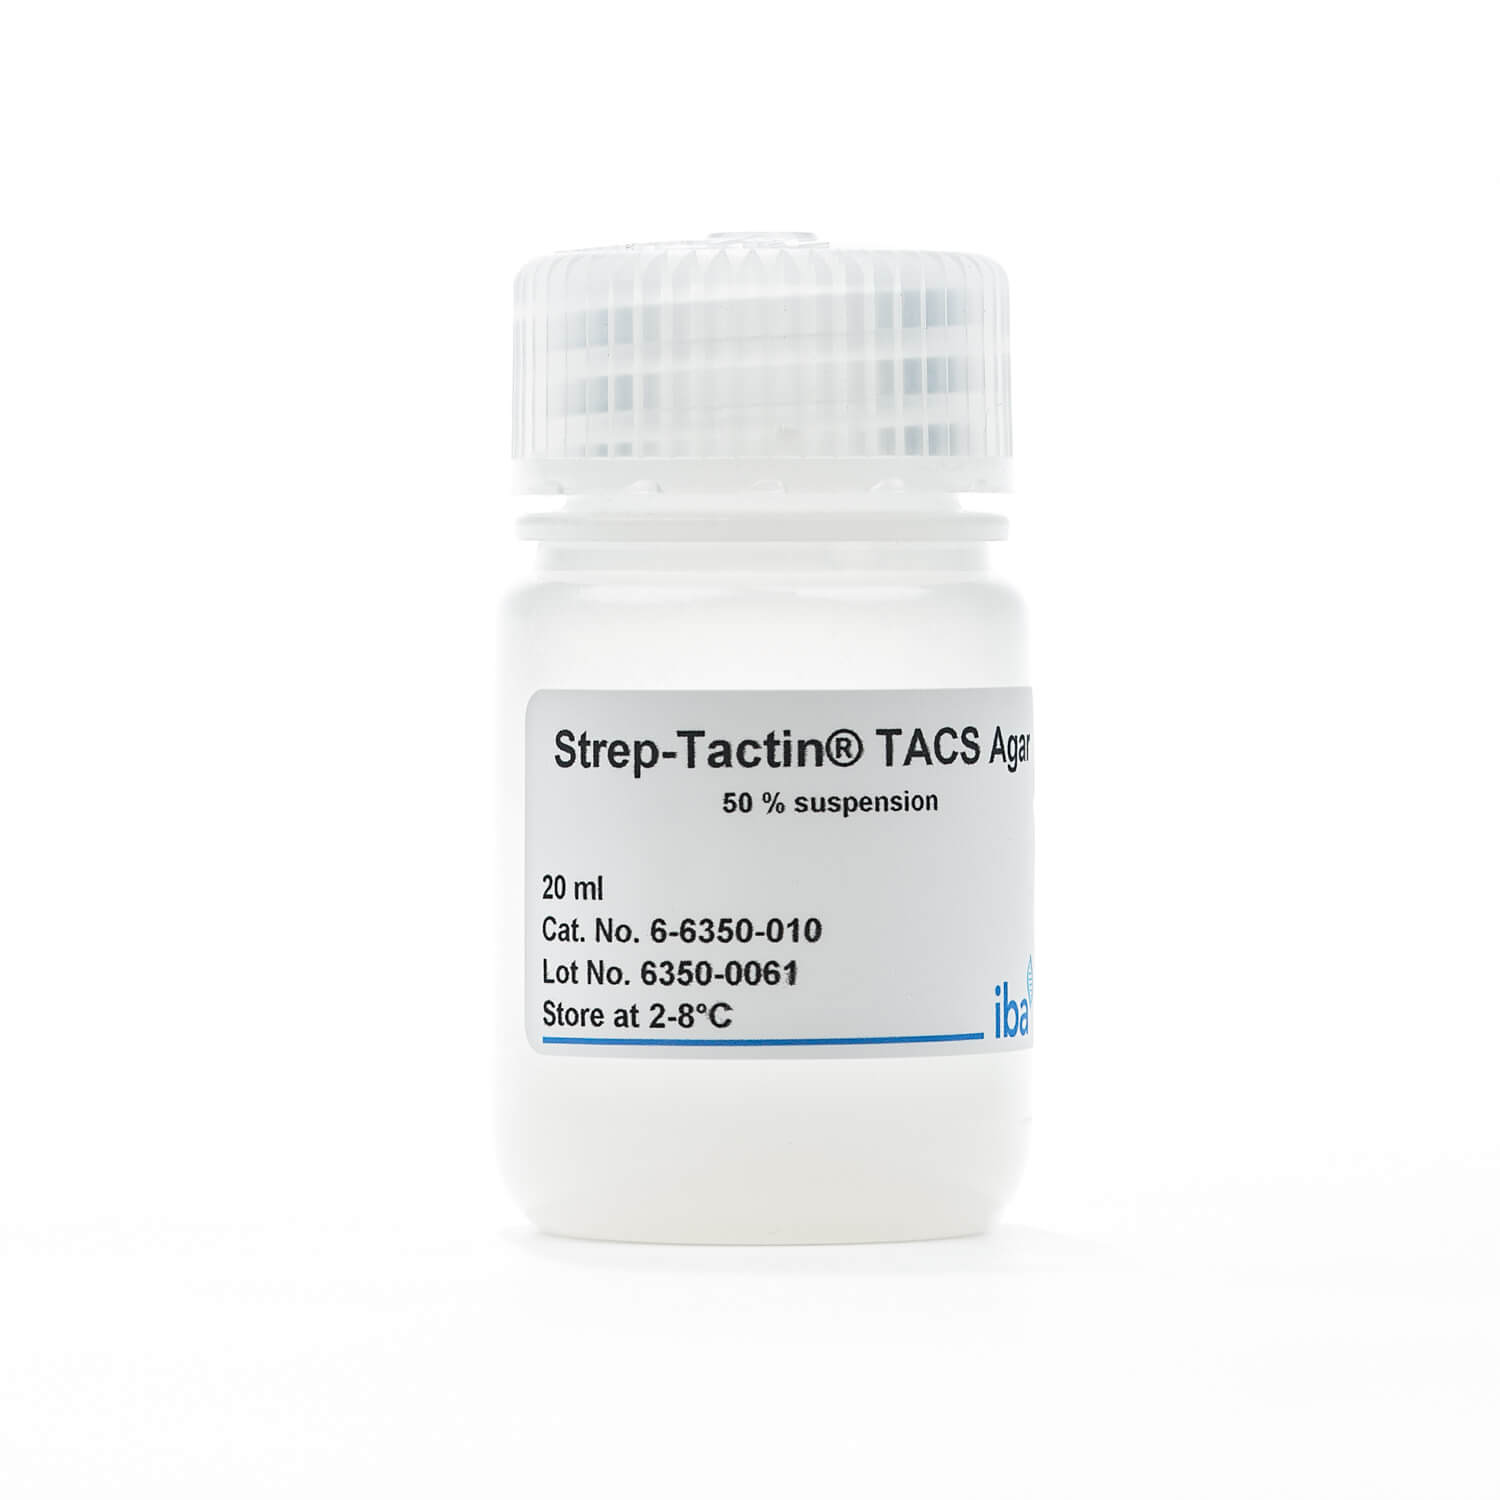 Strep-Tactin® TACS Agarose